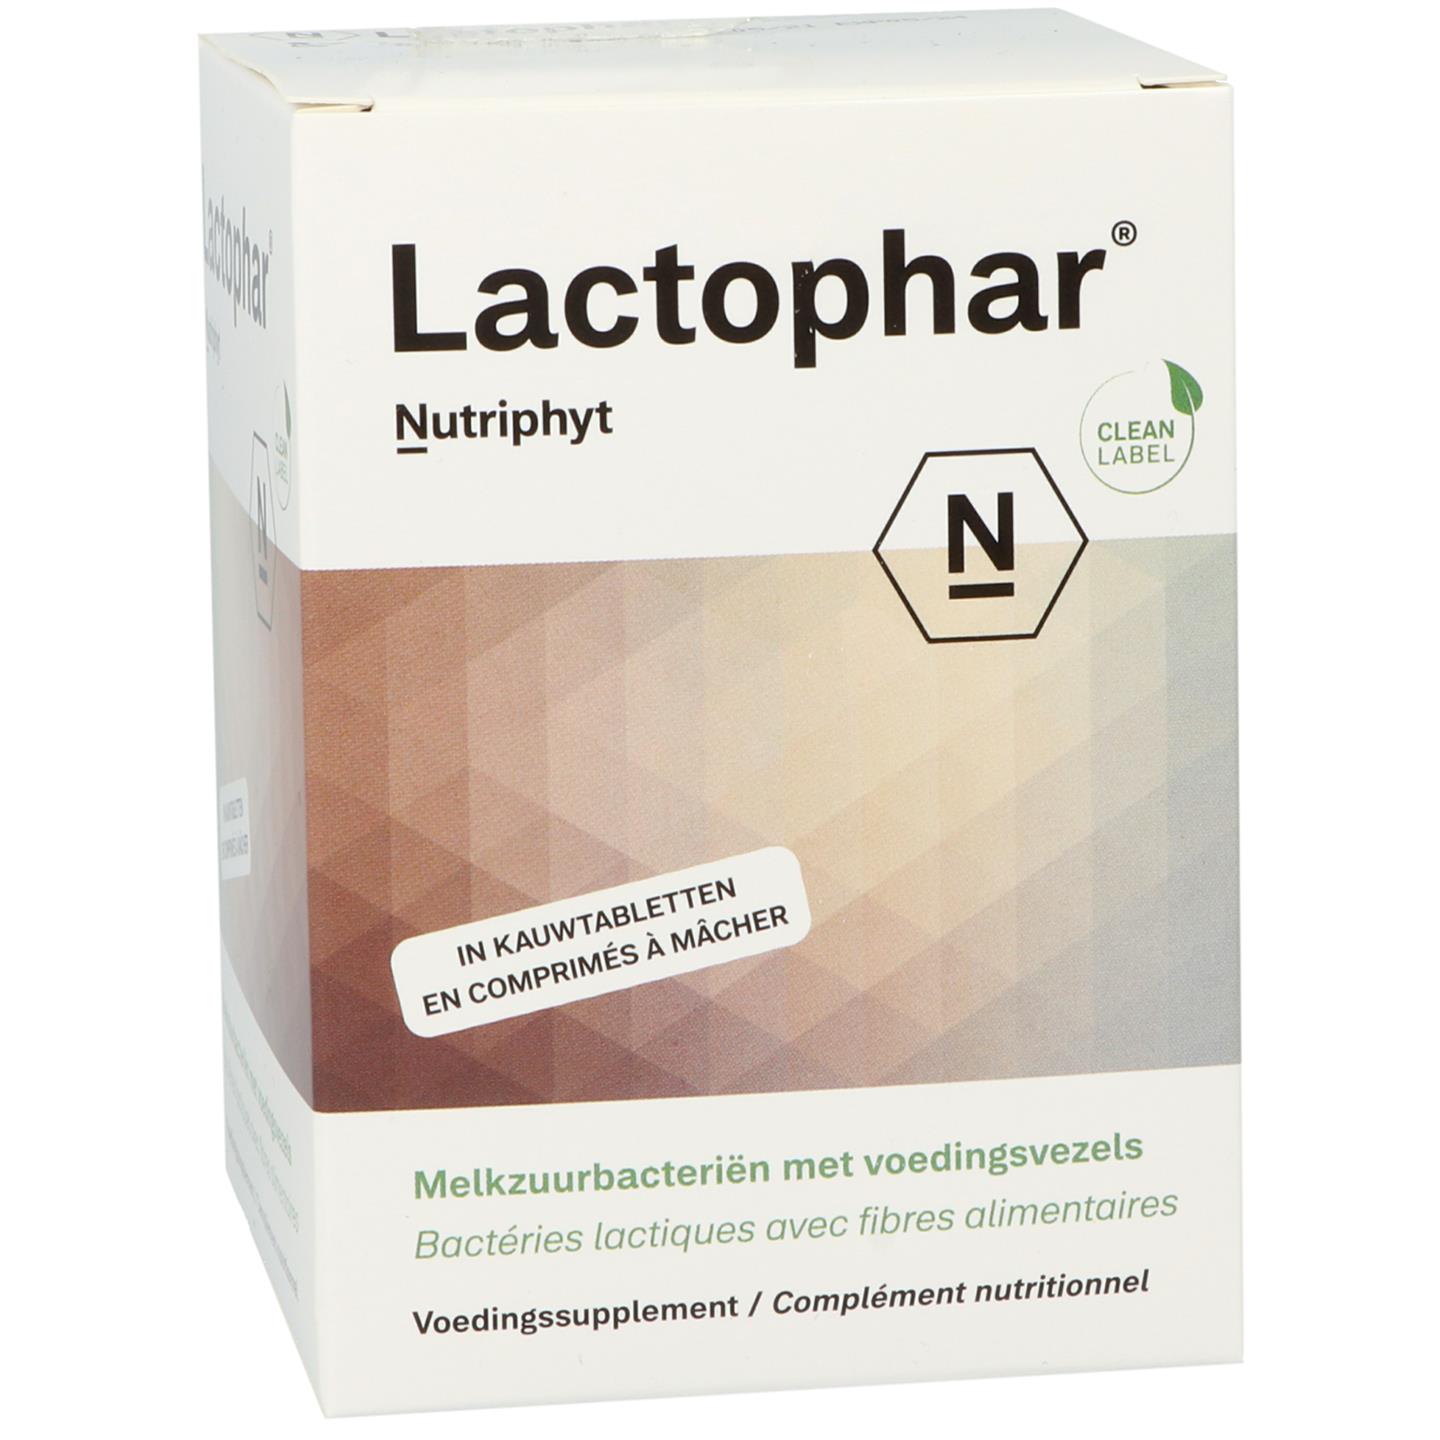 Lactophar